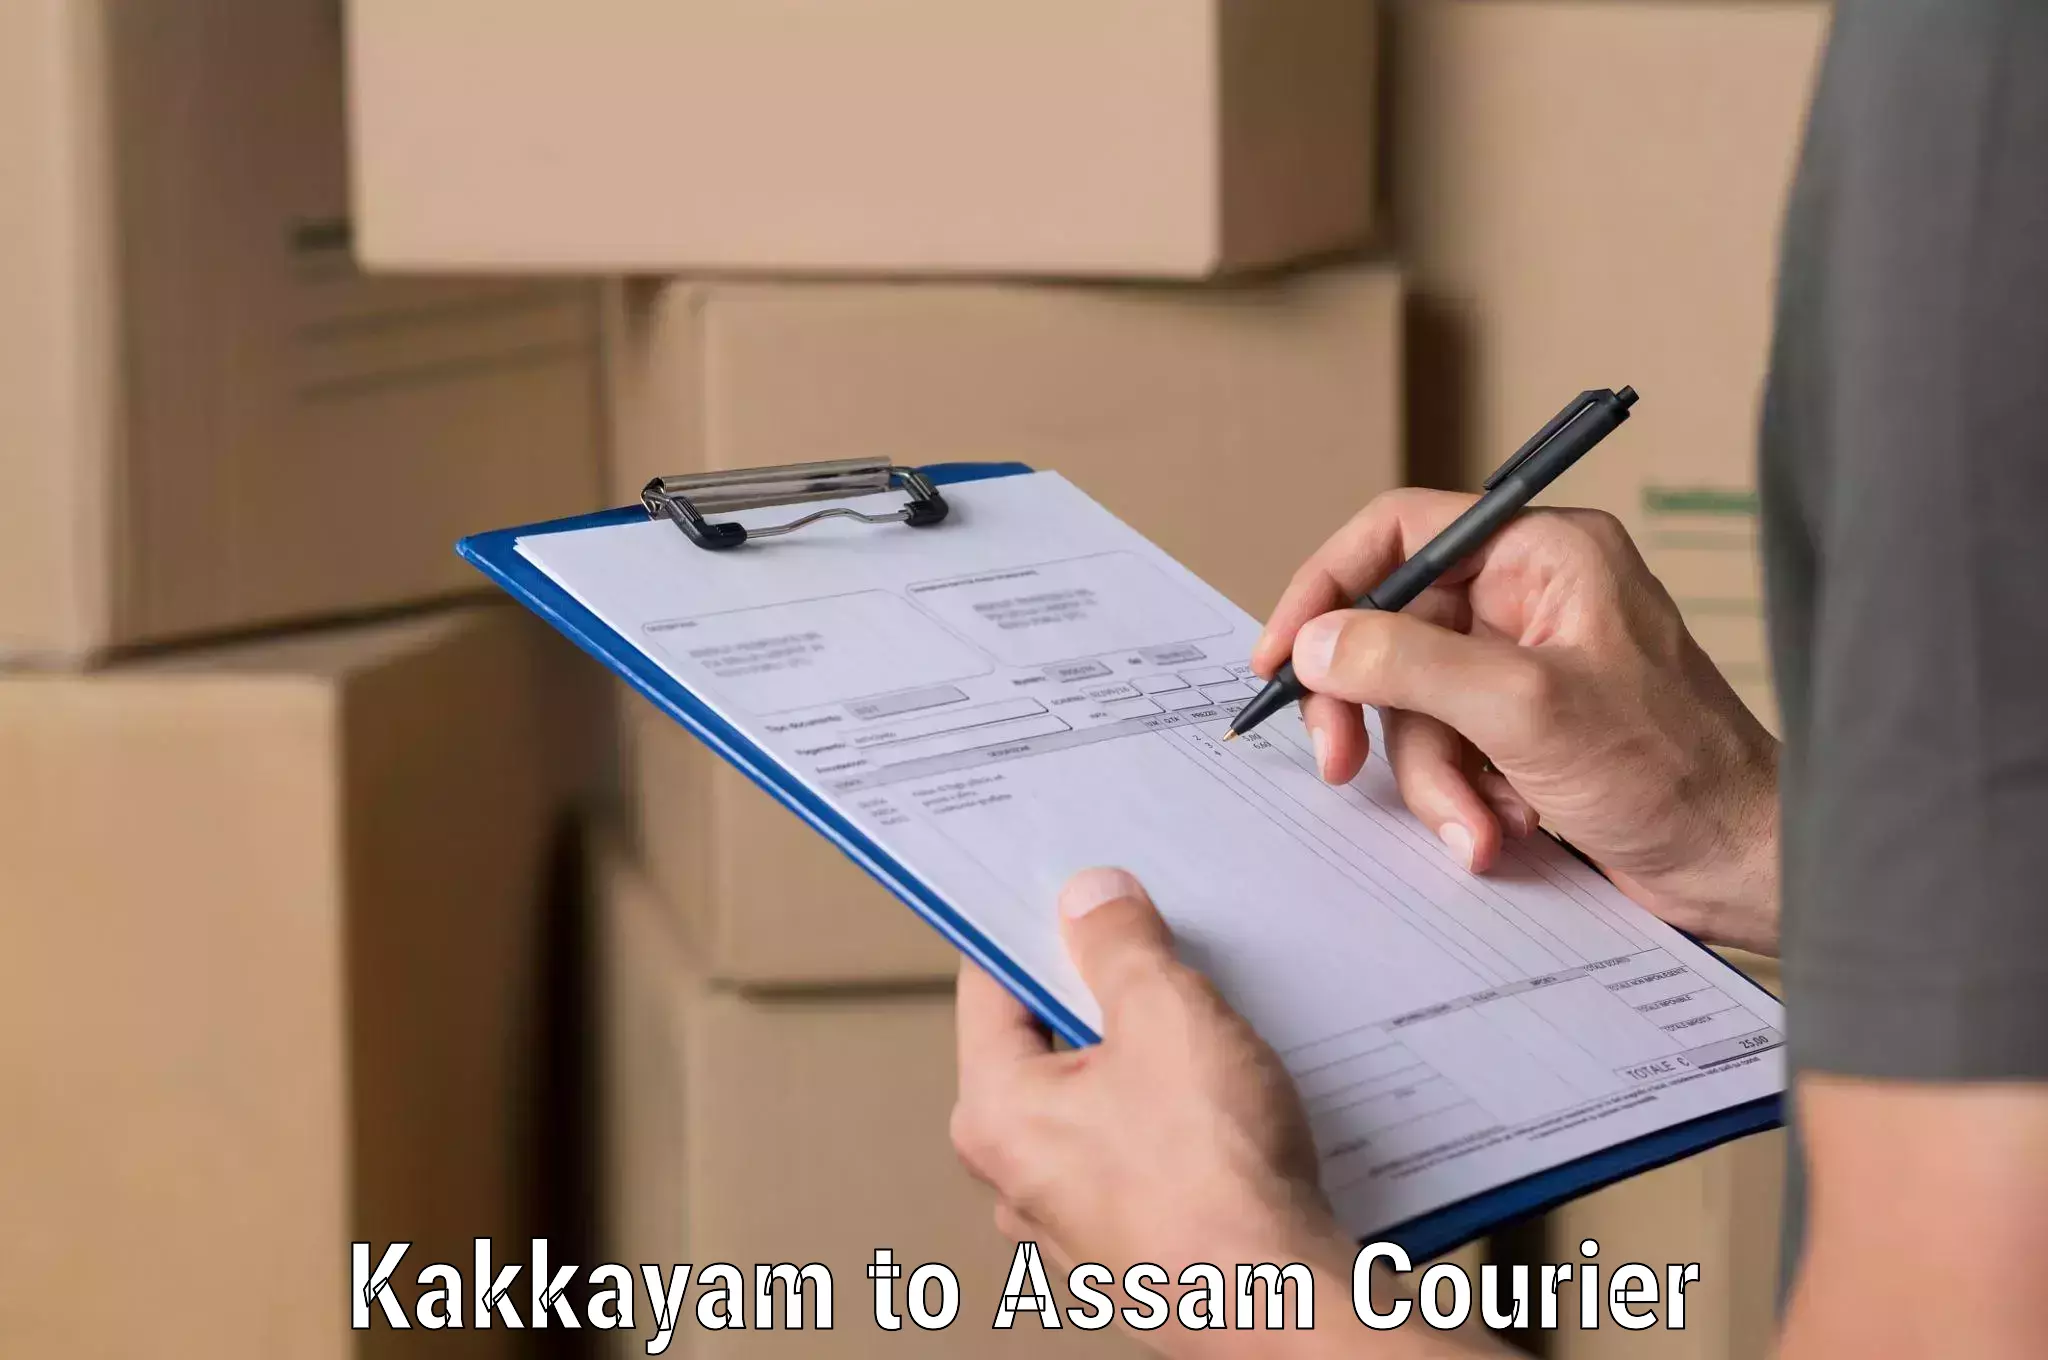 Package tracking in Kakkayam to Jonai